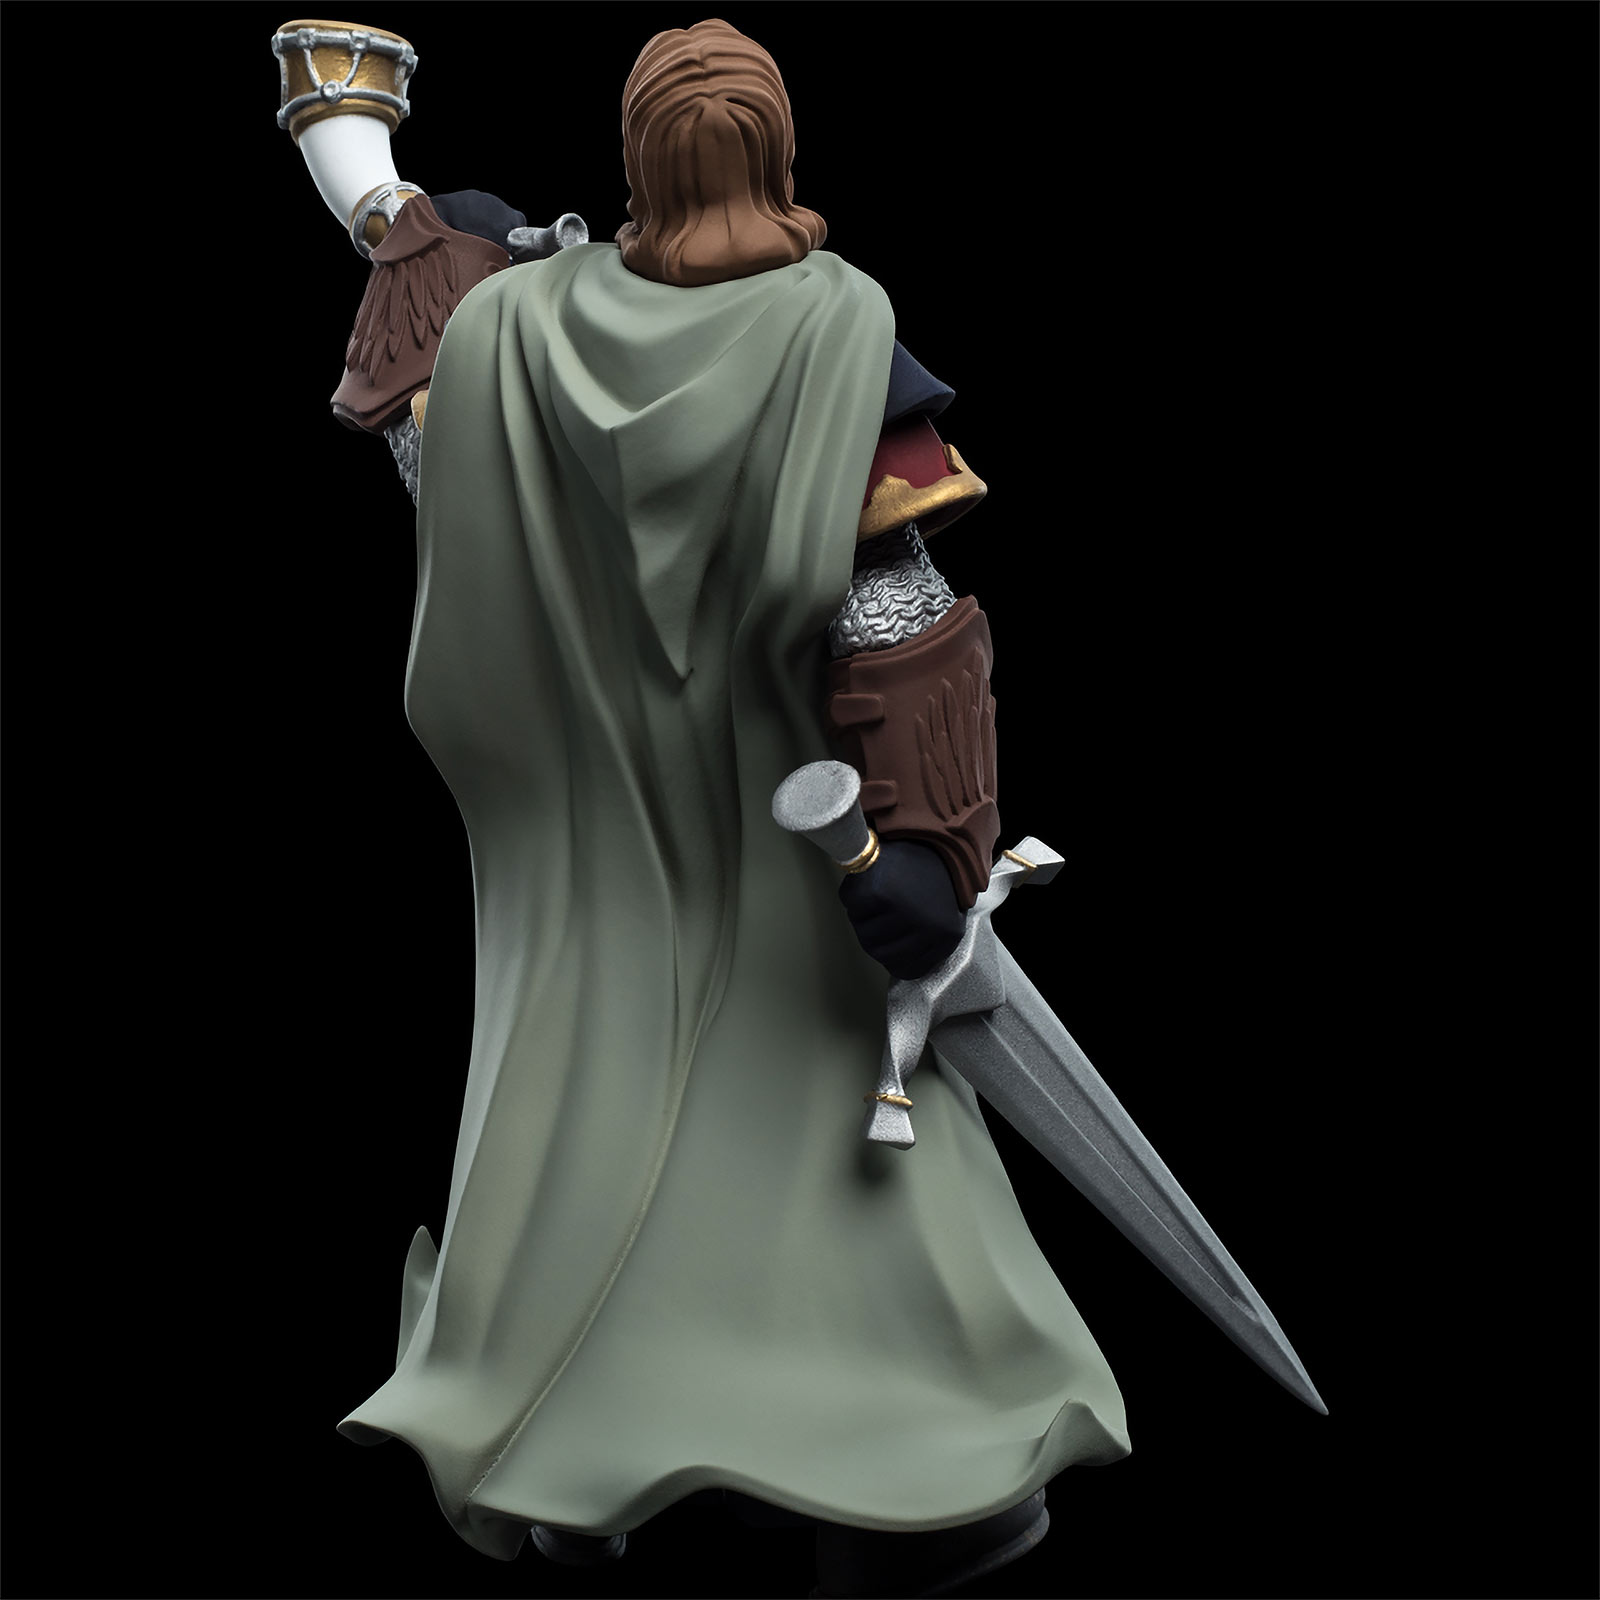 Herr der Ringe - Boromir Mini Epics Figur